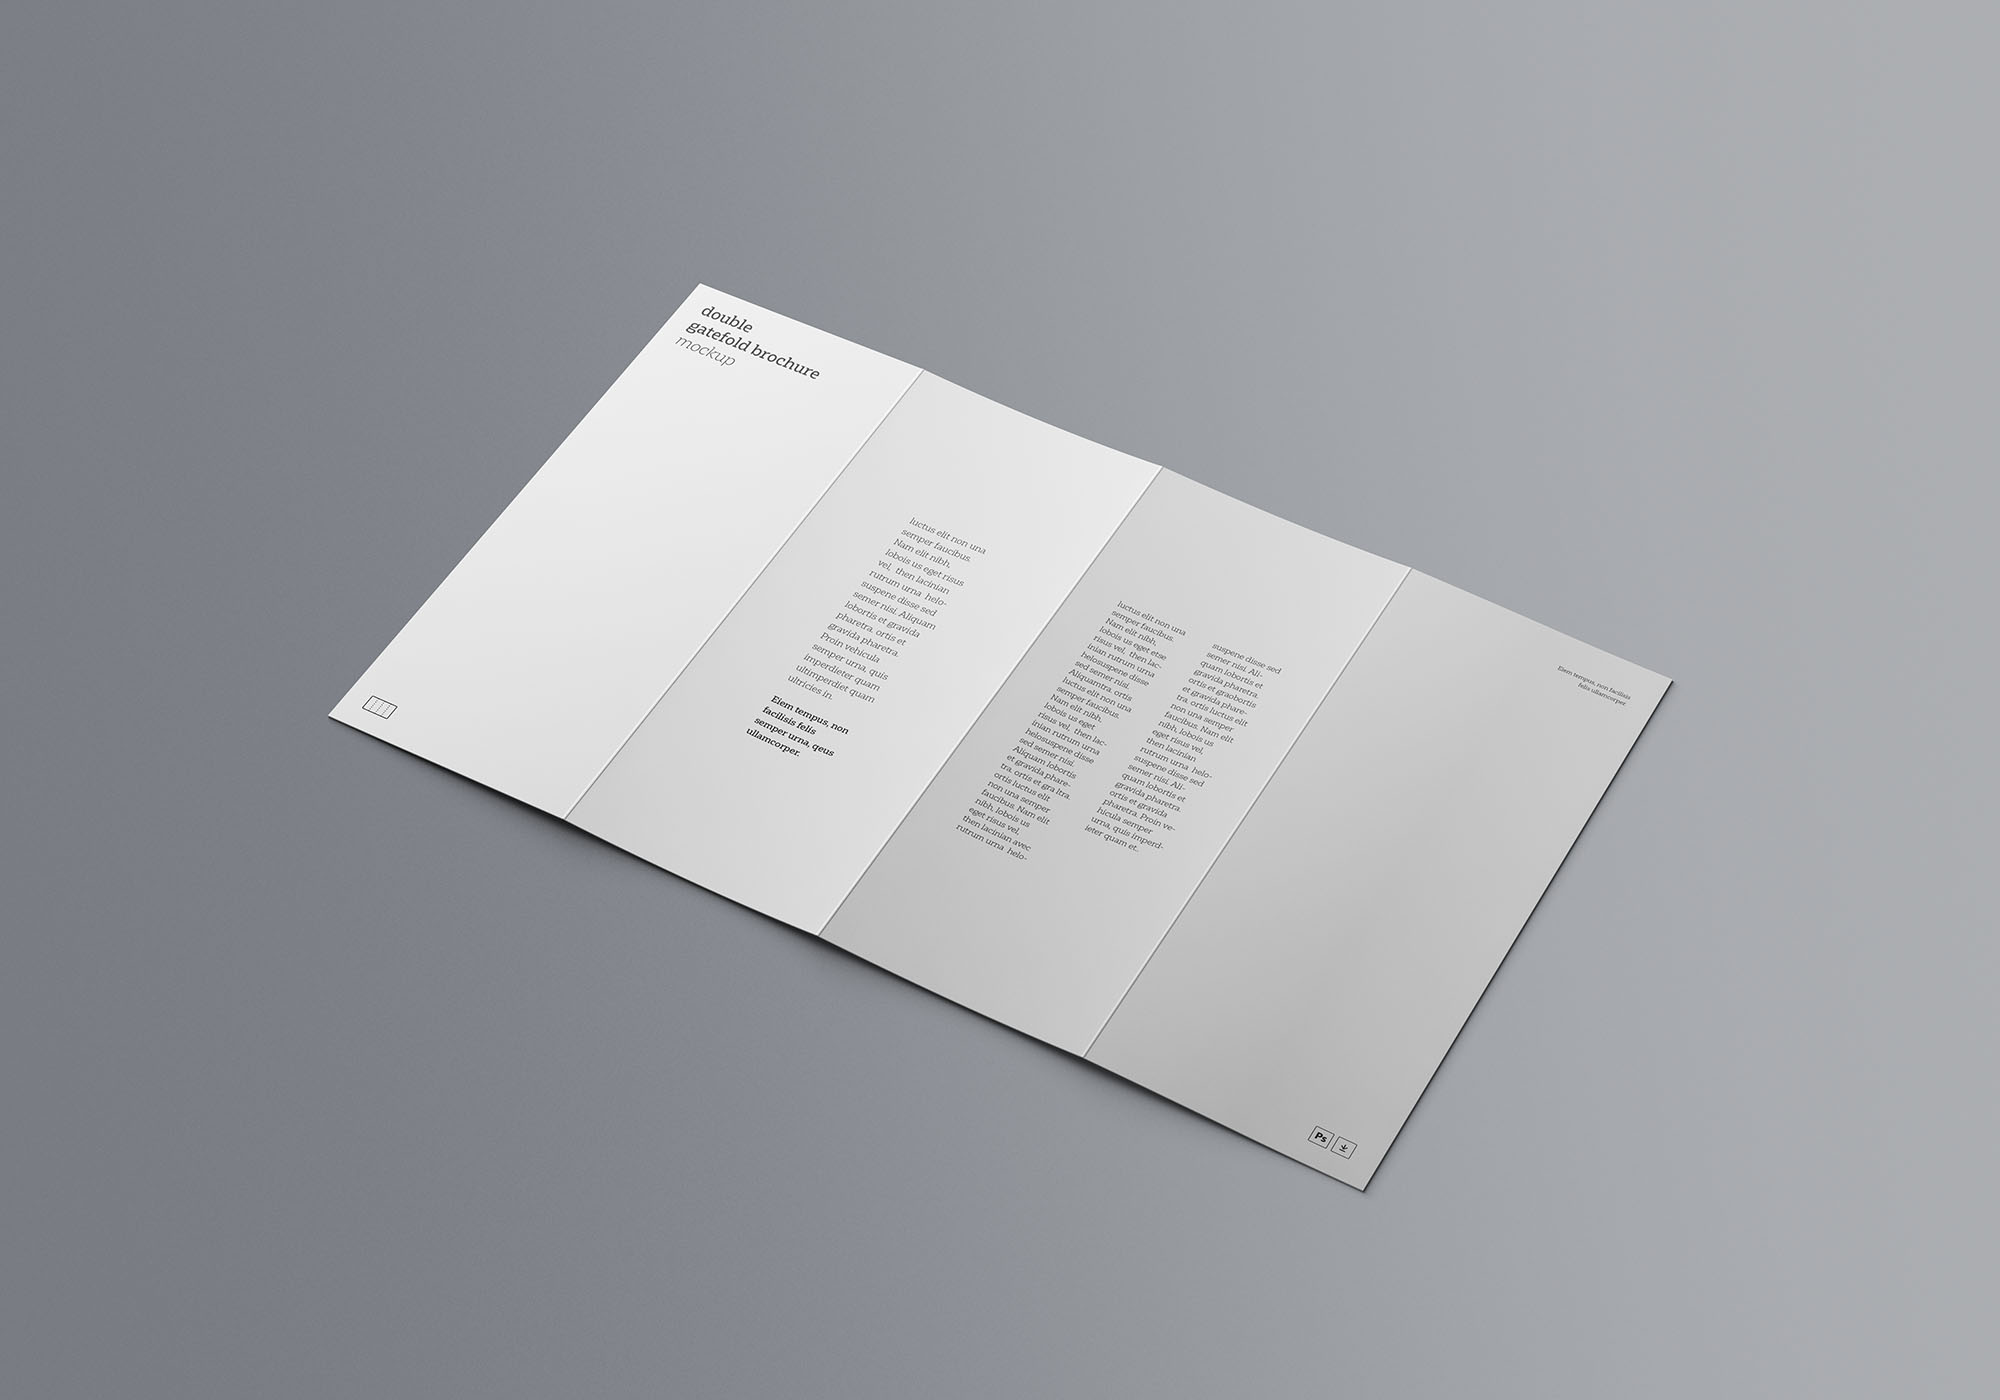 双门折叠宣传册设计效果图样机模板 Double Gatefold Brochure Mockup插图(3)